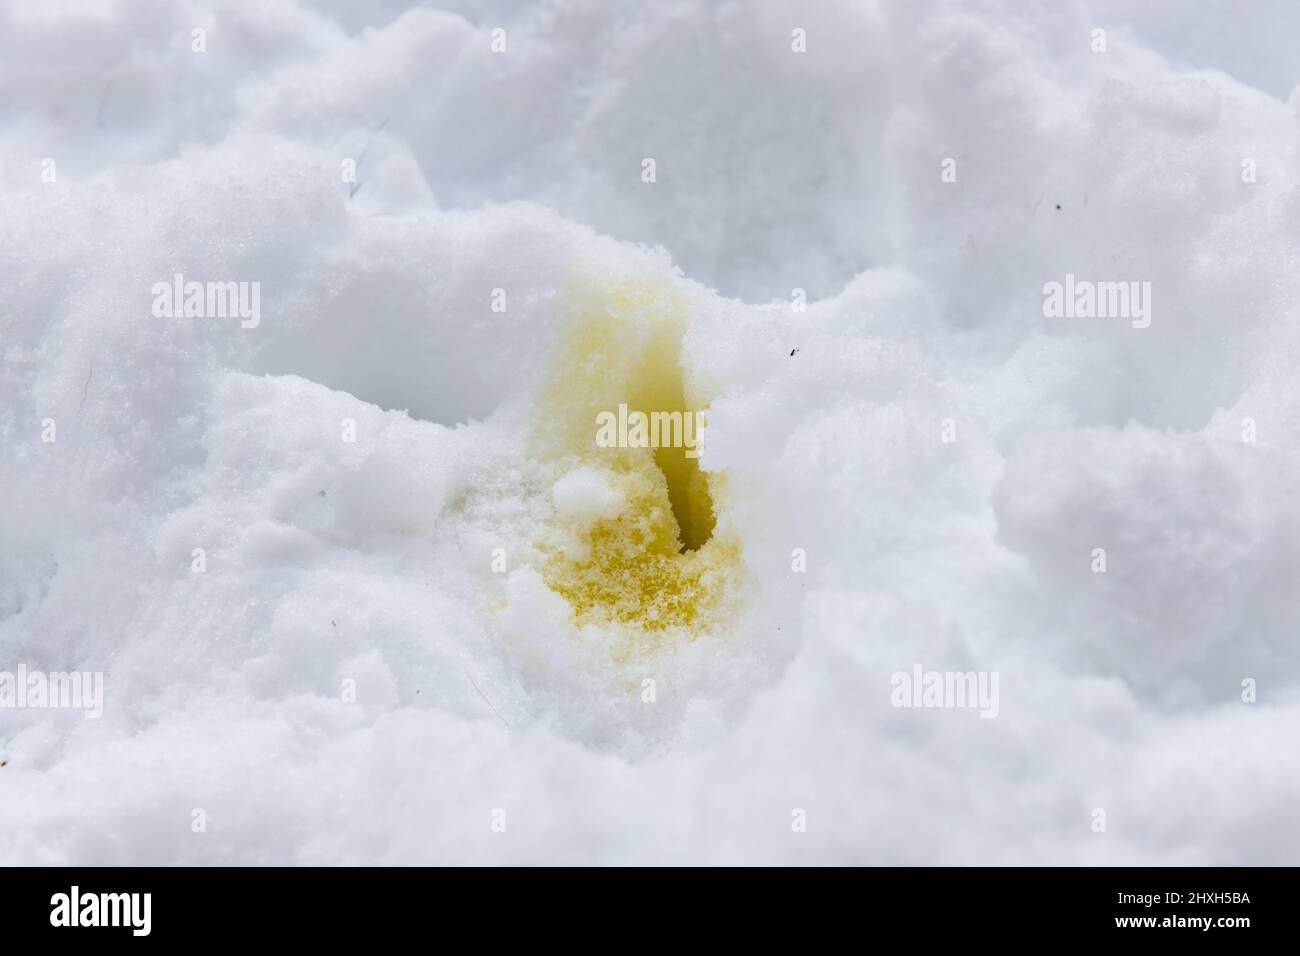 Orina de perro amarillo brillante o orina en un banco de nieve blanco. Foto de stock